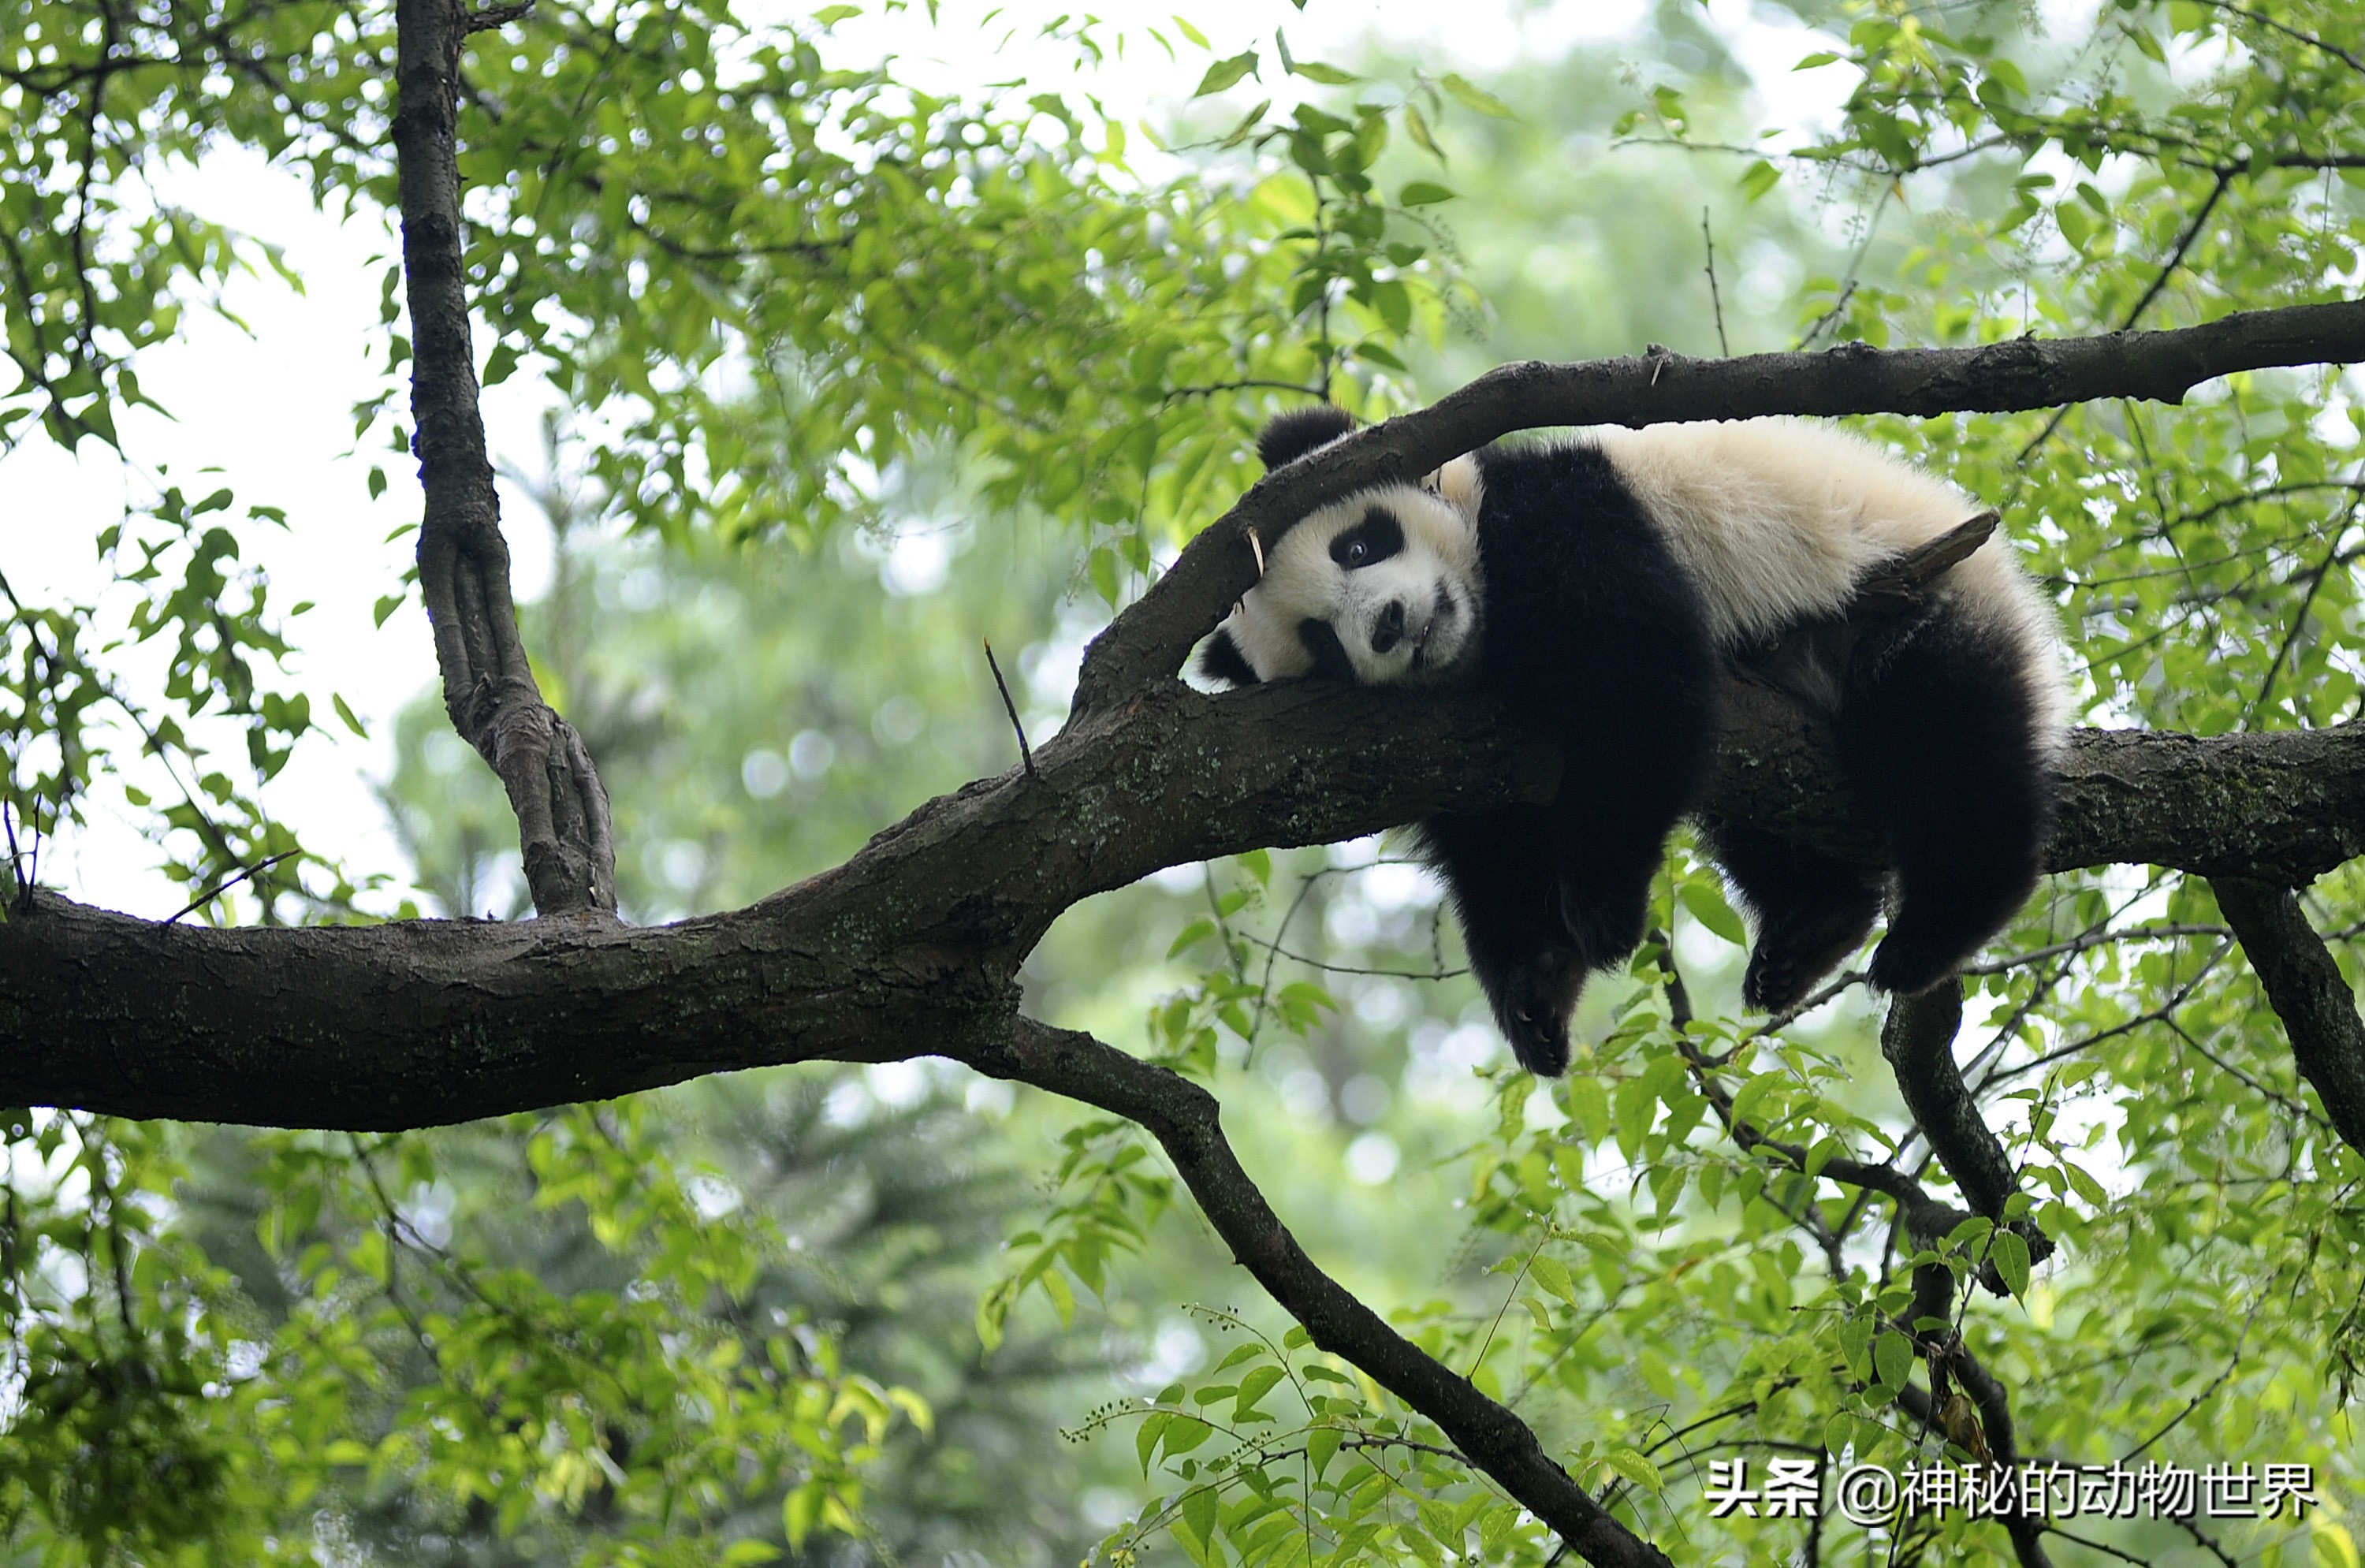 大熊猫的耳朵,眼罩,口鼻,腿,手臂和肩膀处的毛皮颜色为黑色,其余的